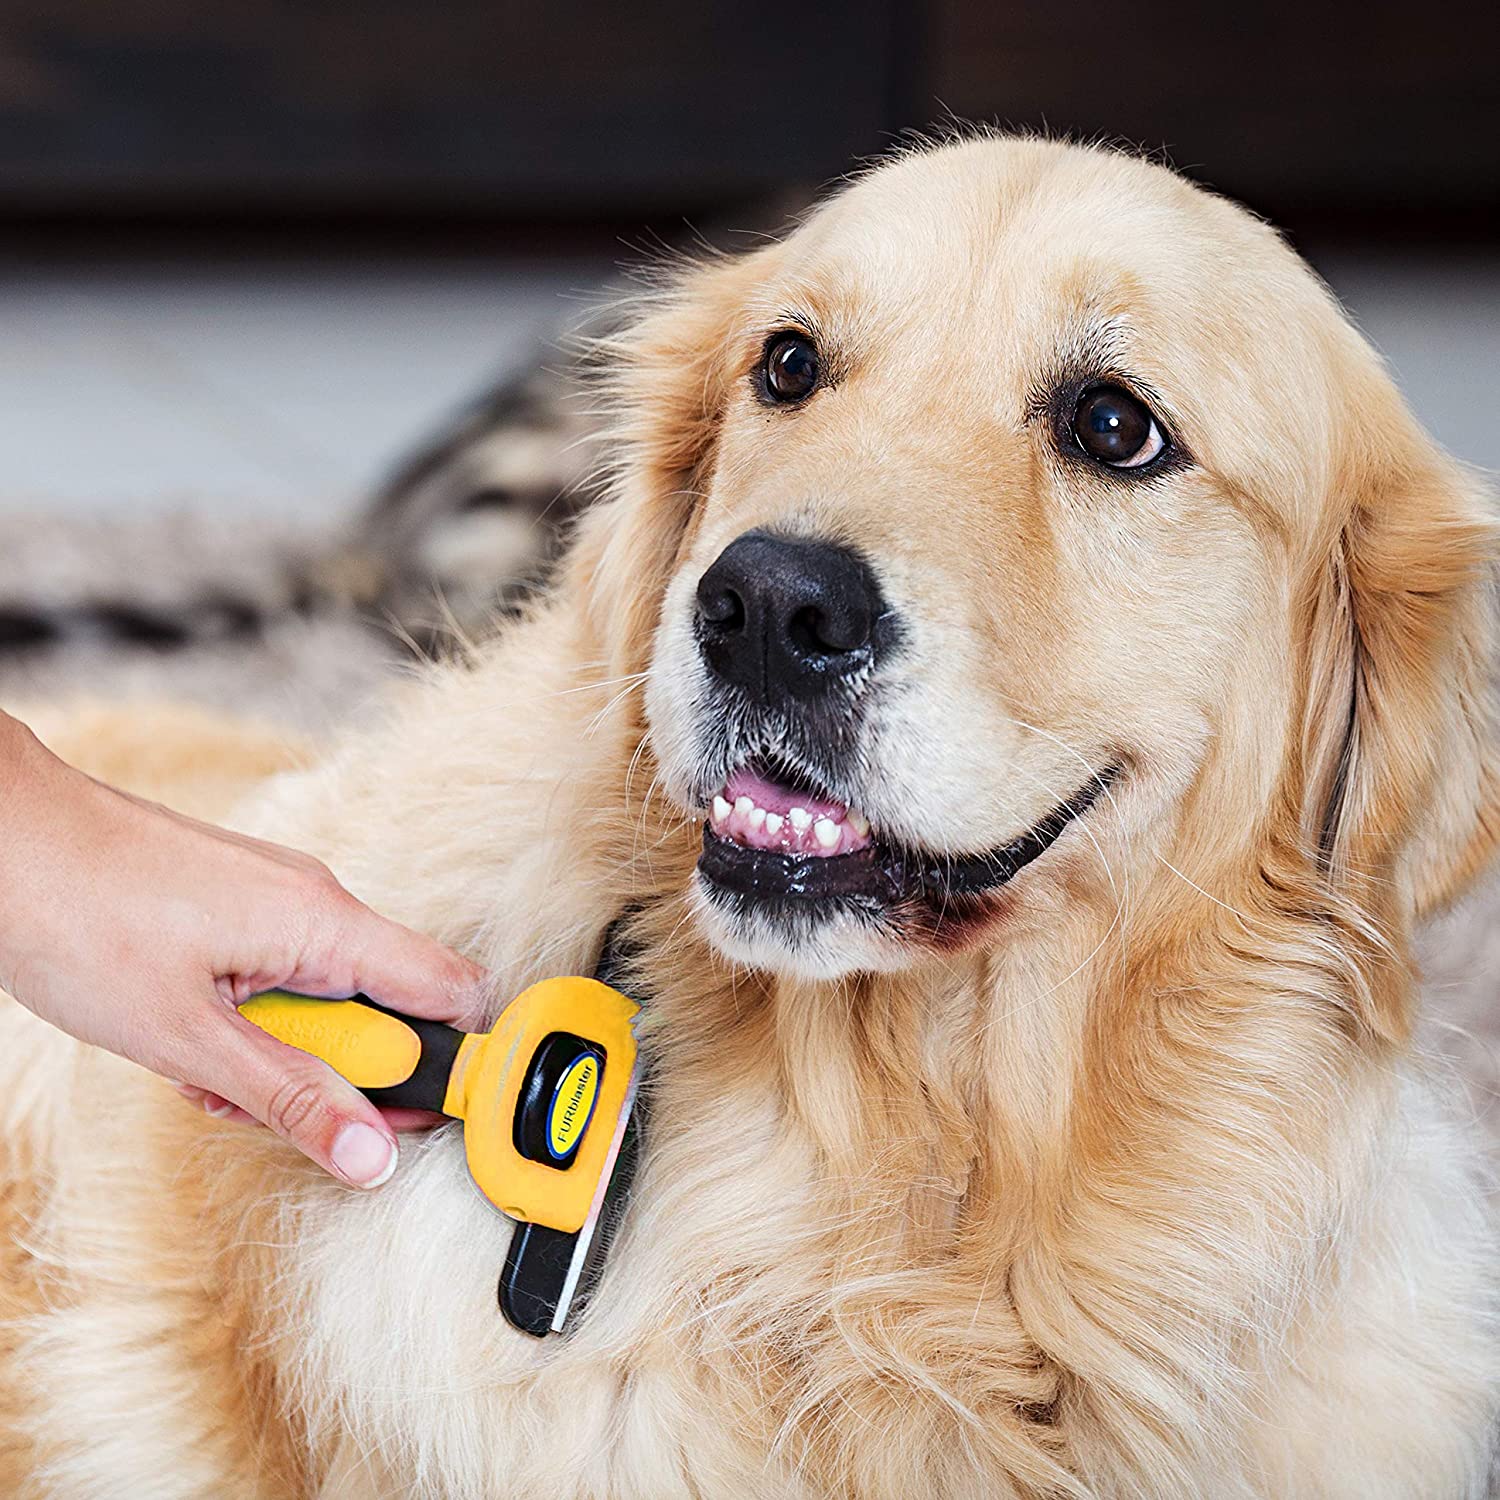  DakPets FURblaster - Cepillo de Aseo para Perros Pequeños, Medianos y Grandes + Gatos con Pelaje Corto a Largo, Color Amarillo 